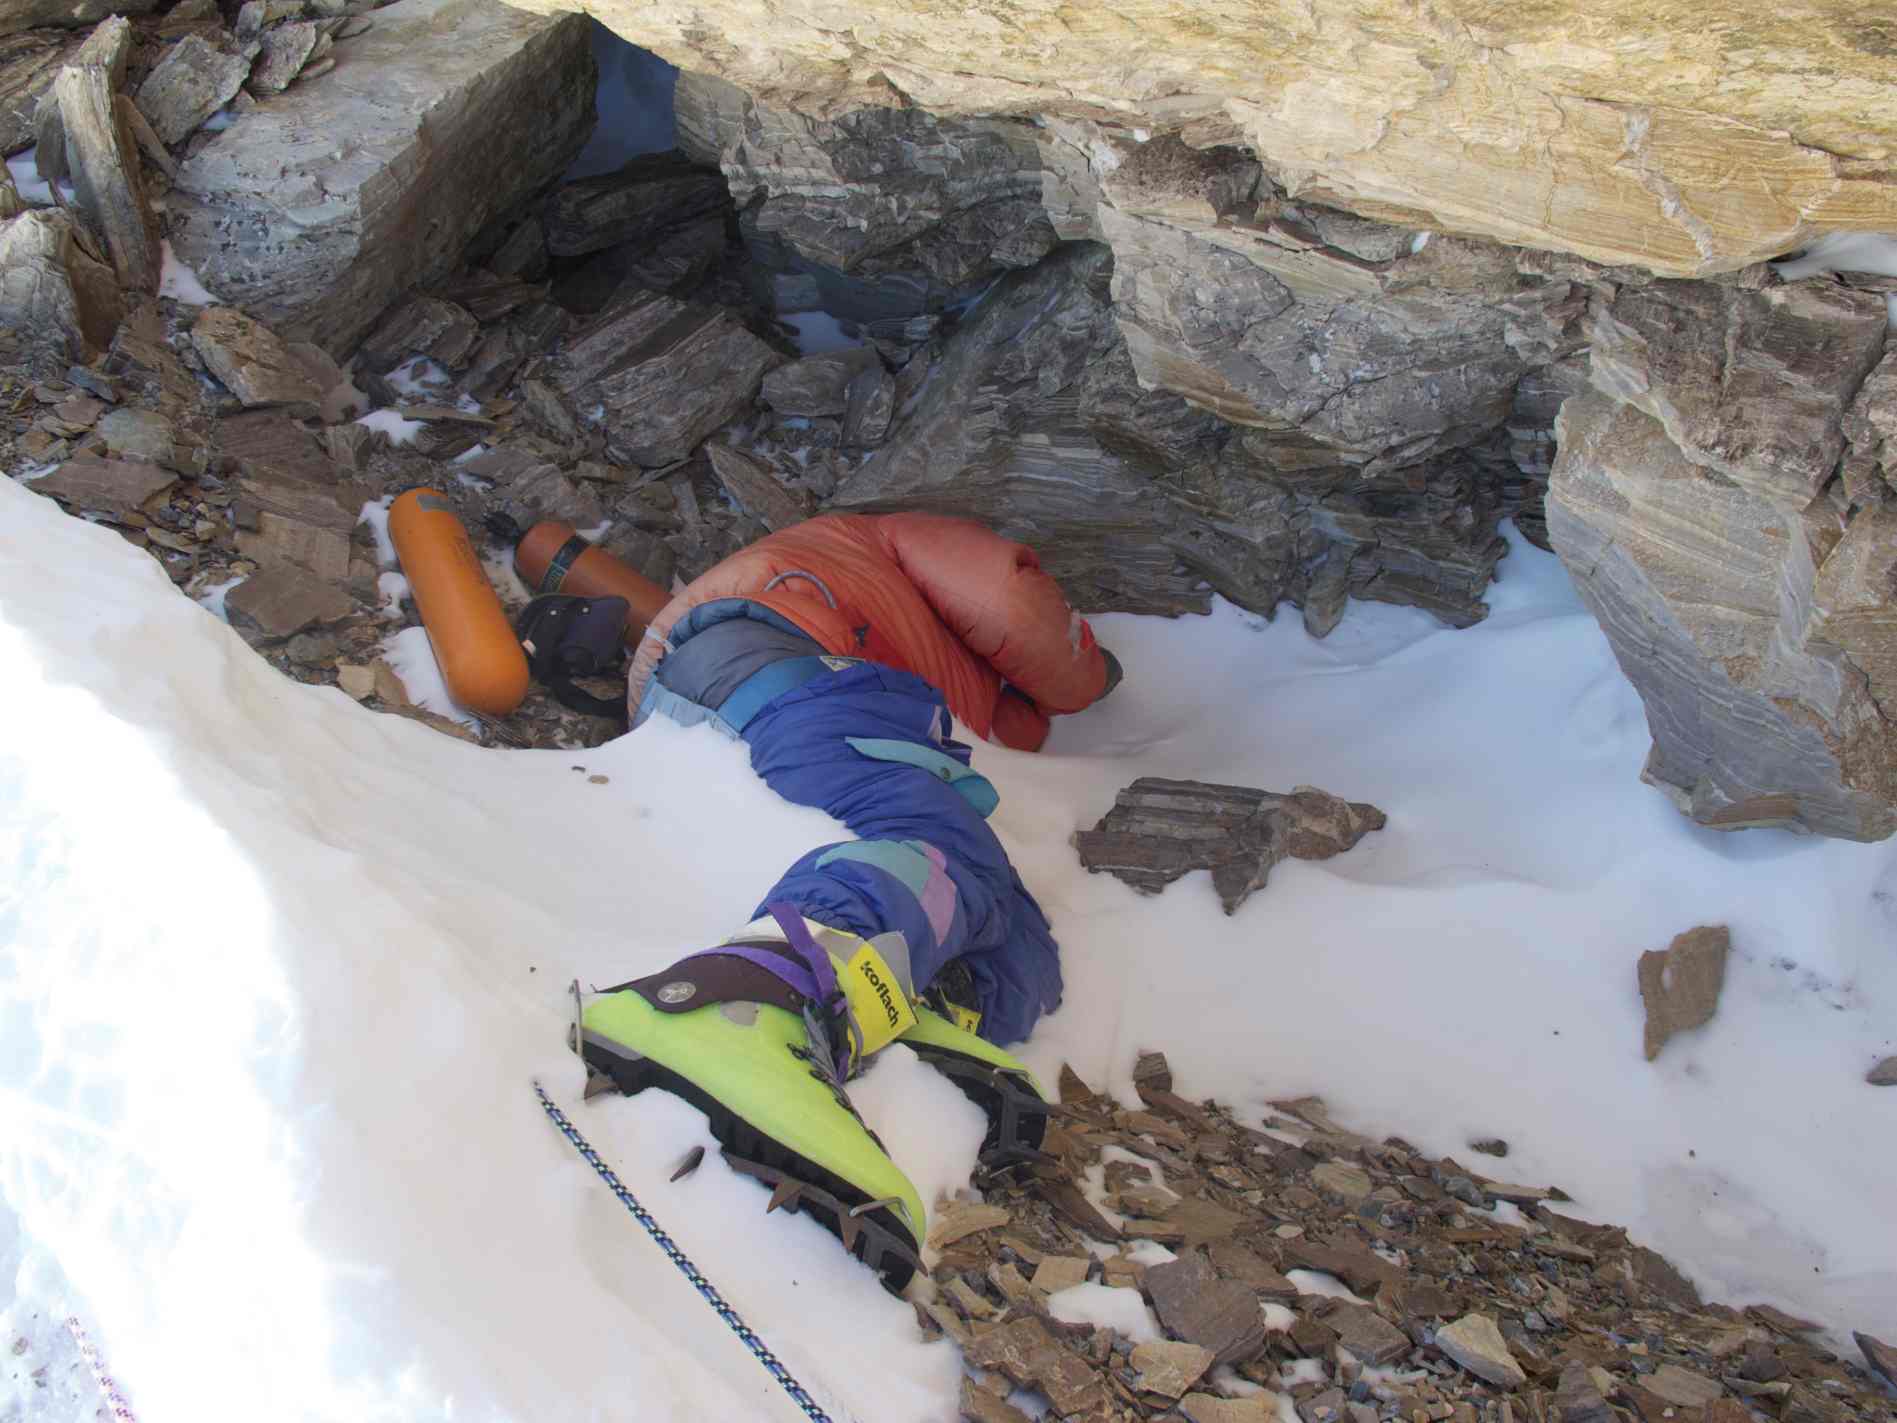 Fénykép "Zöld csizmáról", indiai hegymászóról, aki a Mt. északkeleti gerincén halt meg. Everest 1996-ban